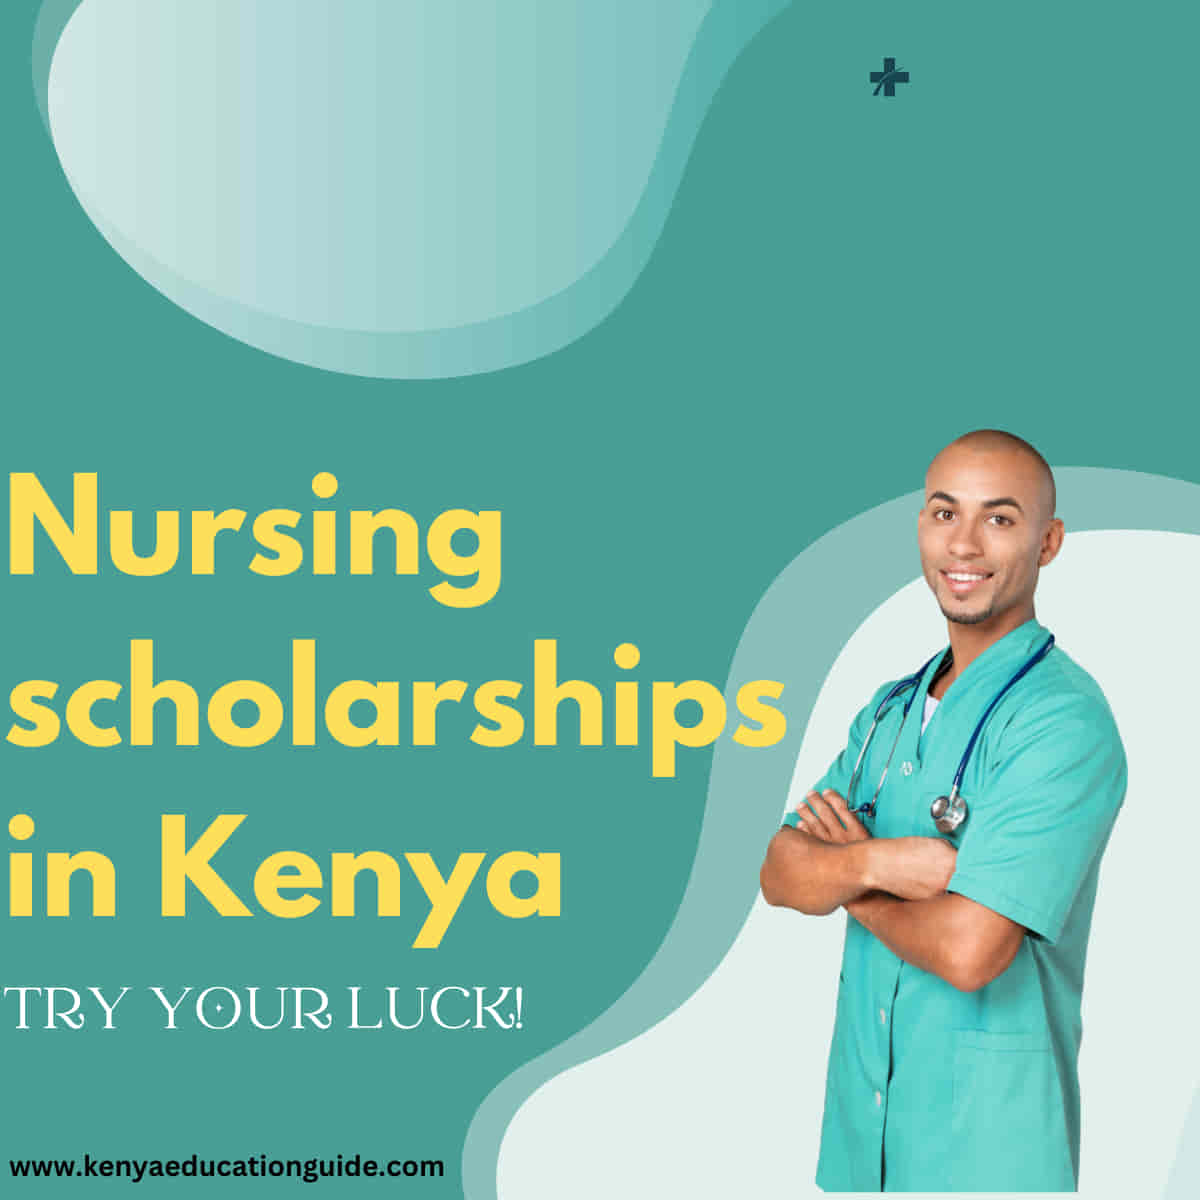 Nursing scholarships in Kenya